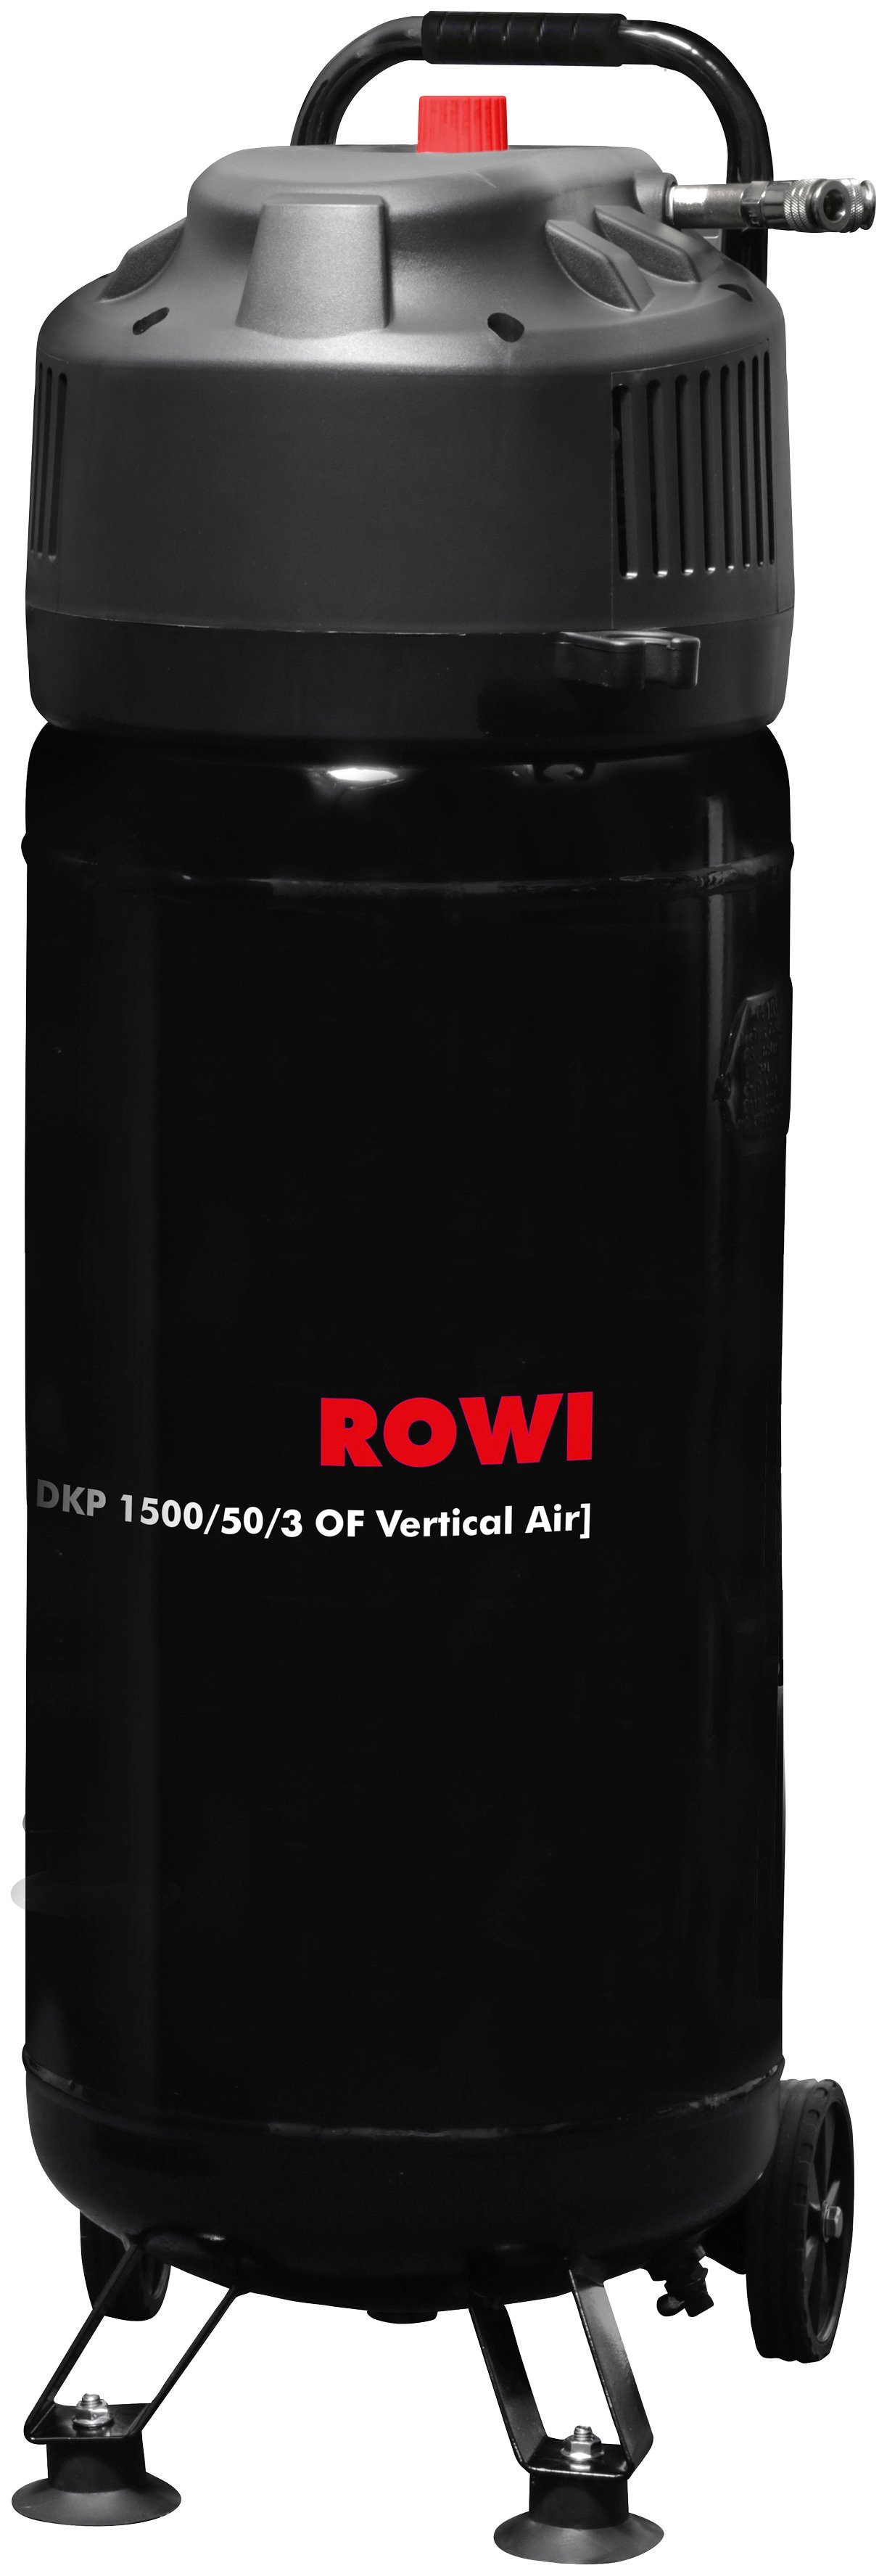 ROWI Kompressor 1500 max. bar, W, 1500/50/3 10 l Vertical DKP OF Air, 50